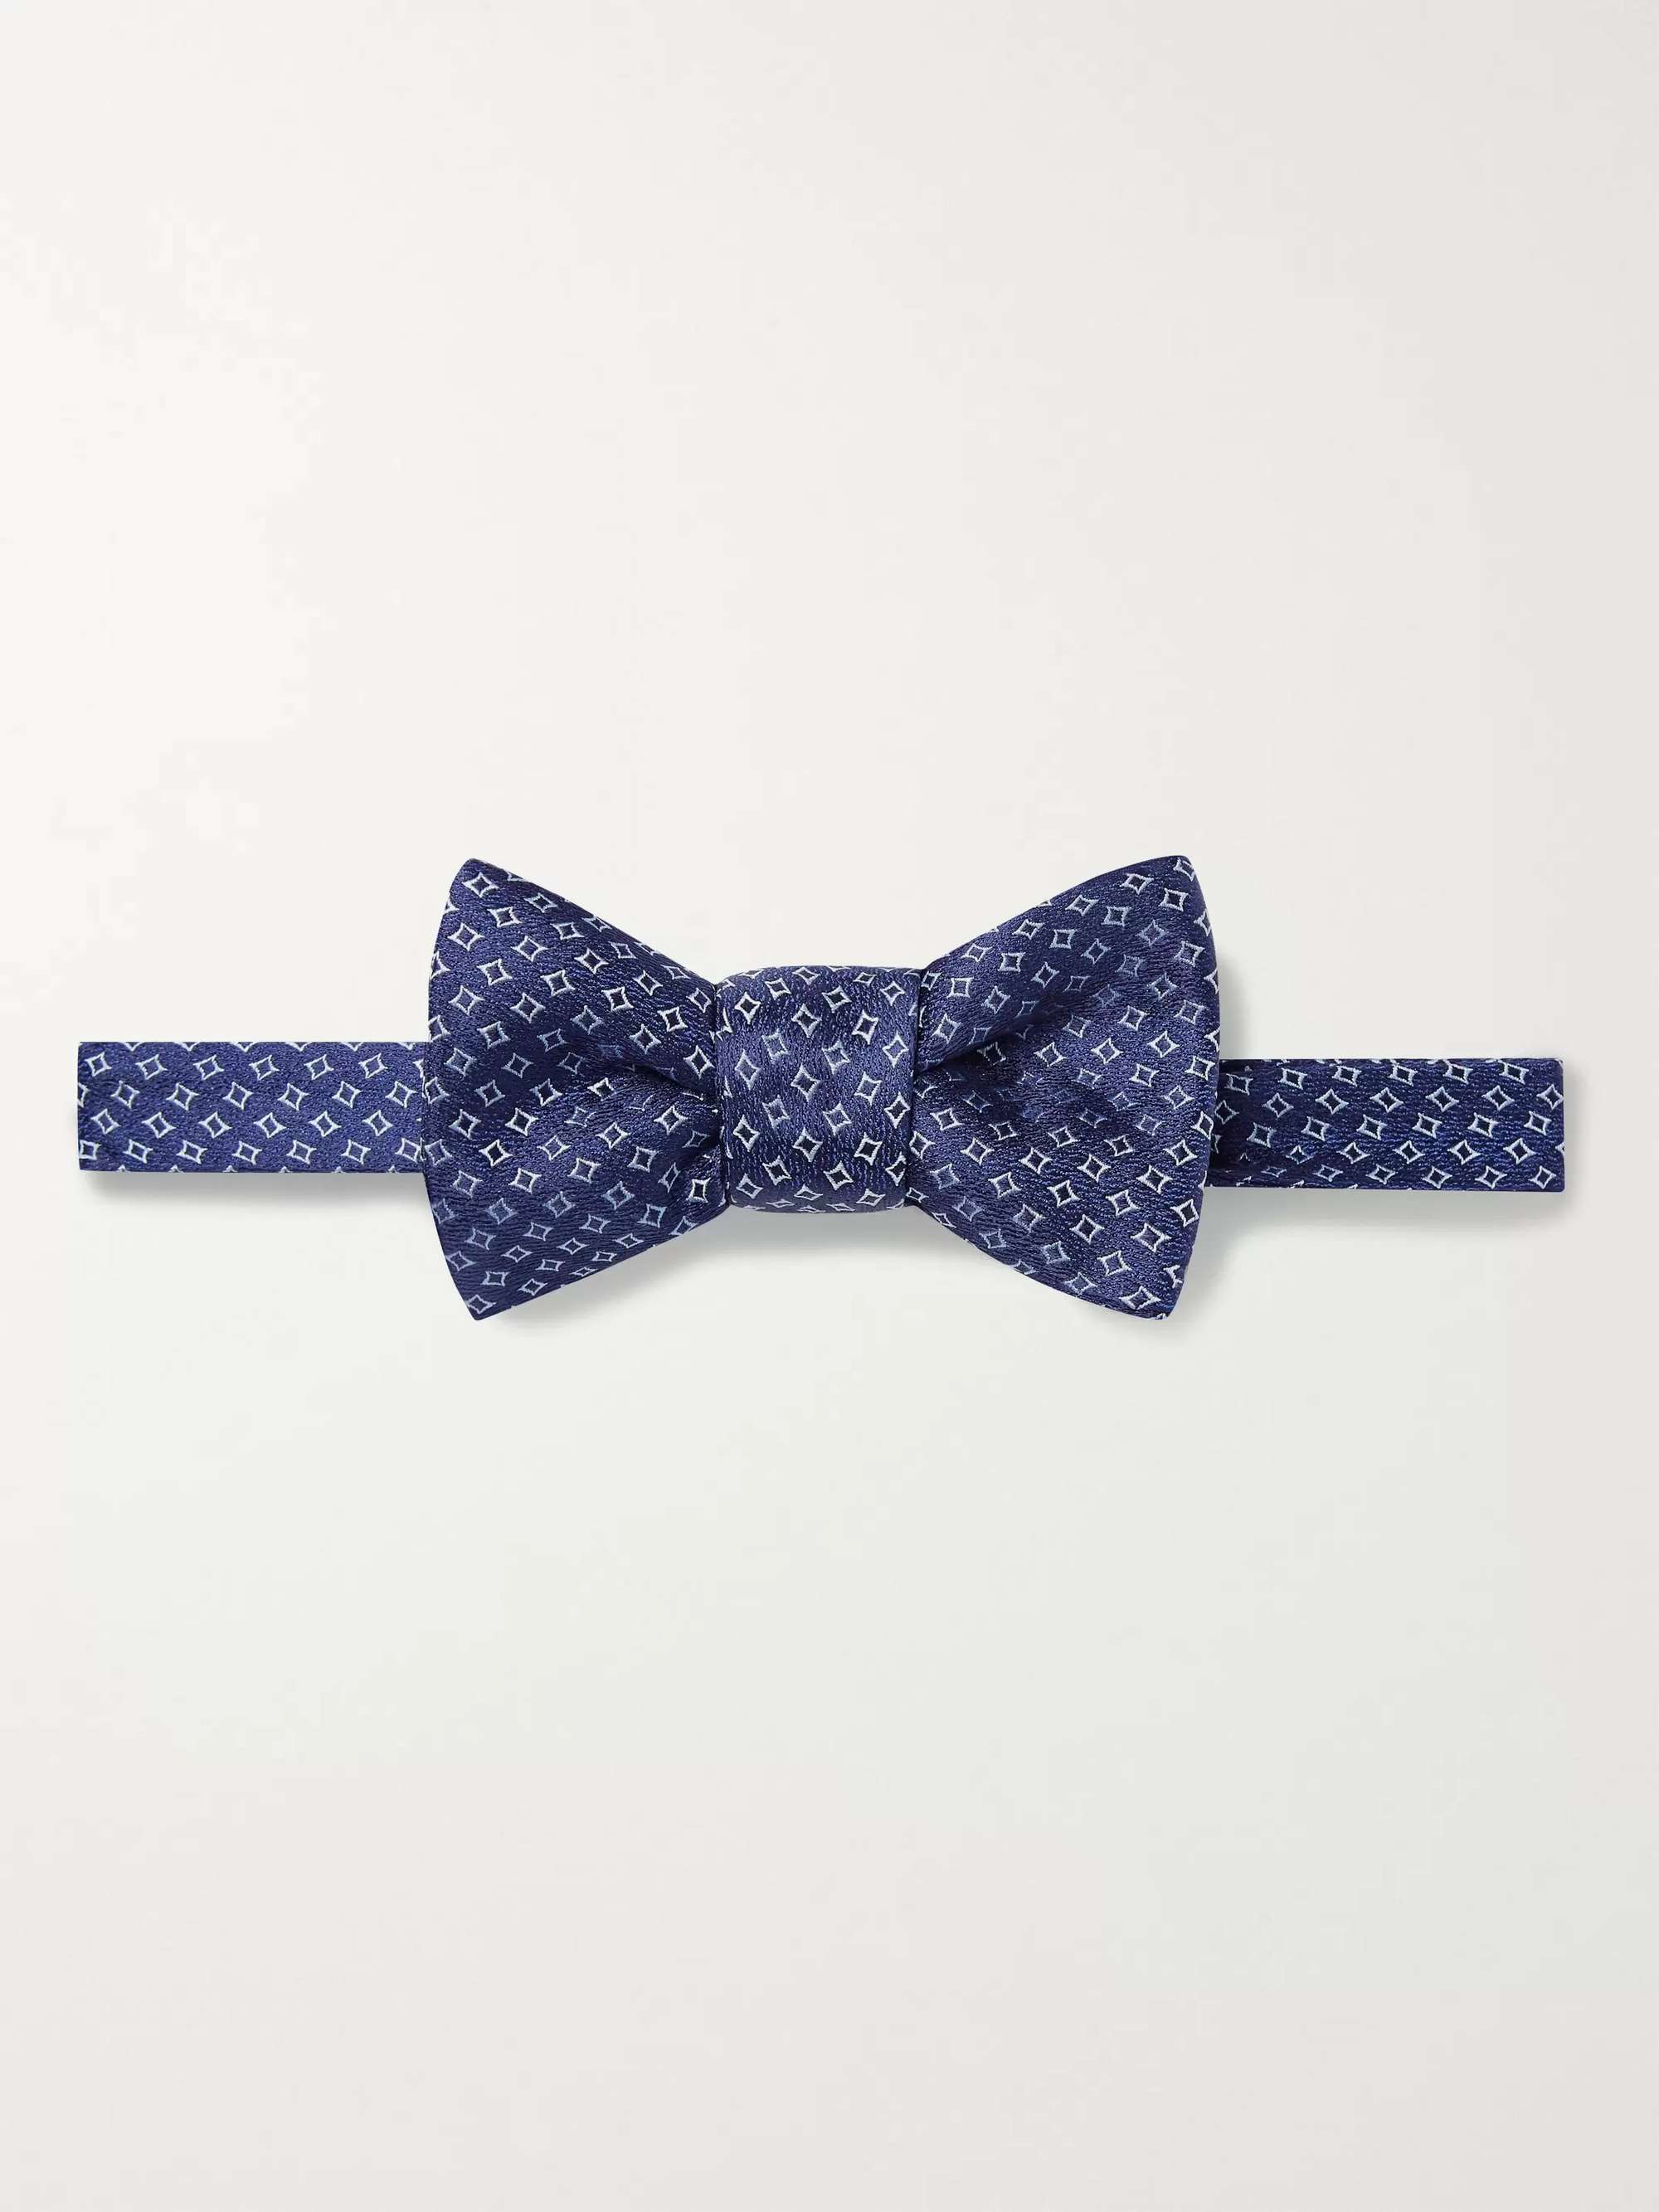 CHARVET Pre-Tied Silk-Jacquard Bow Tie